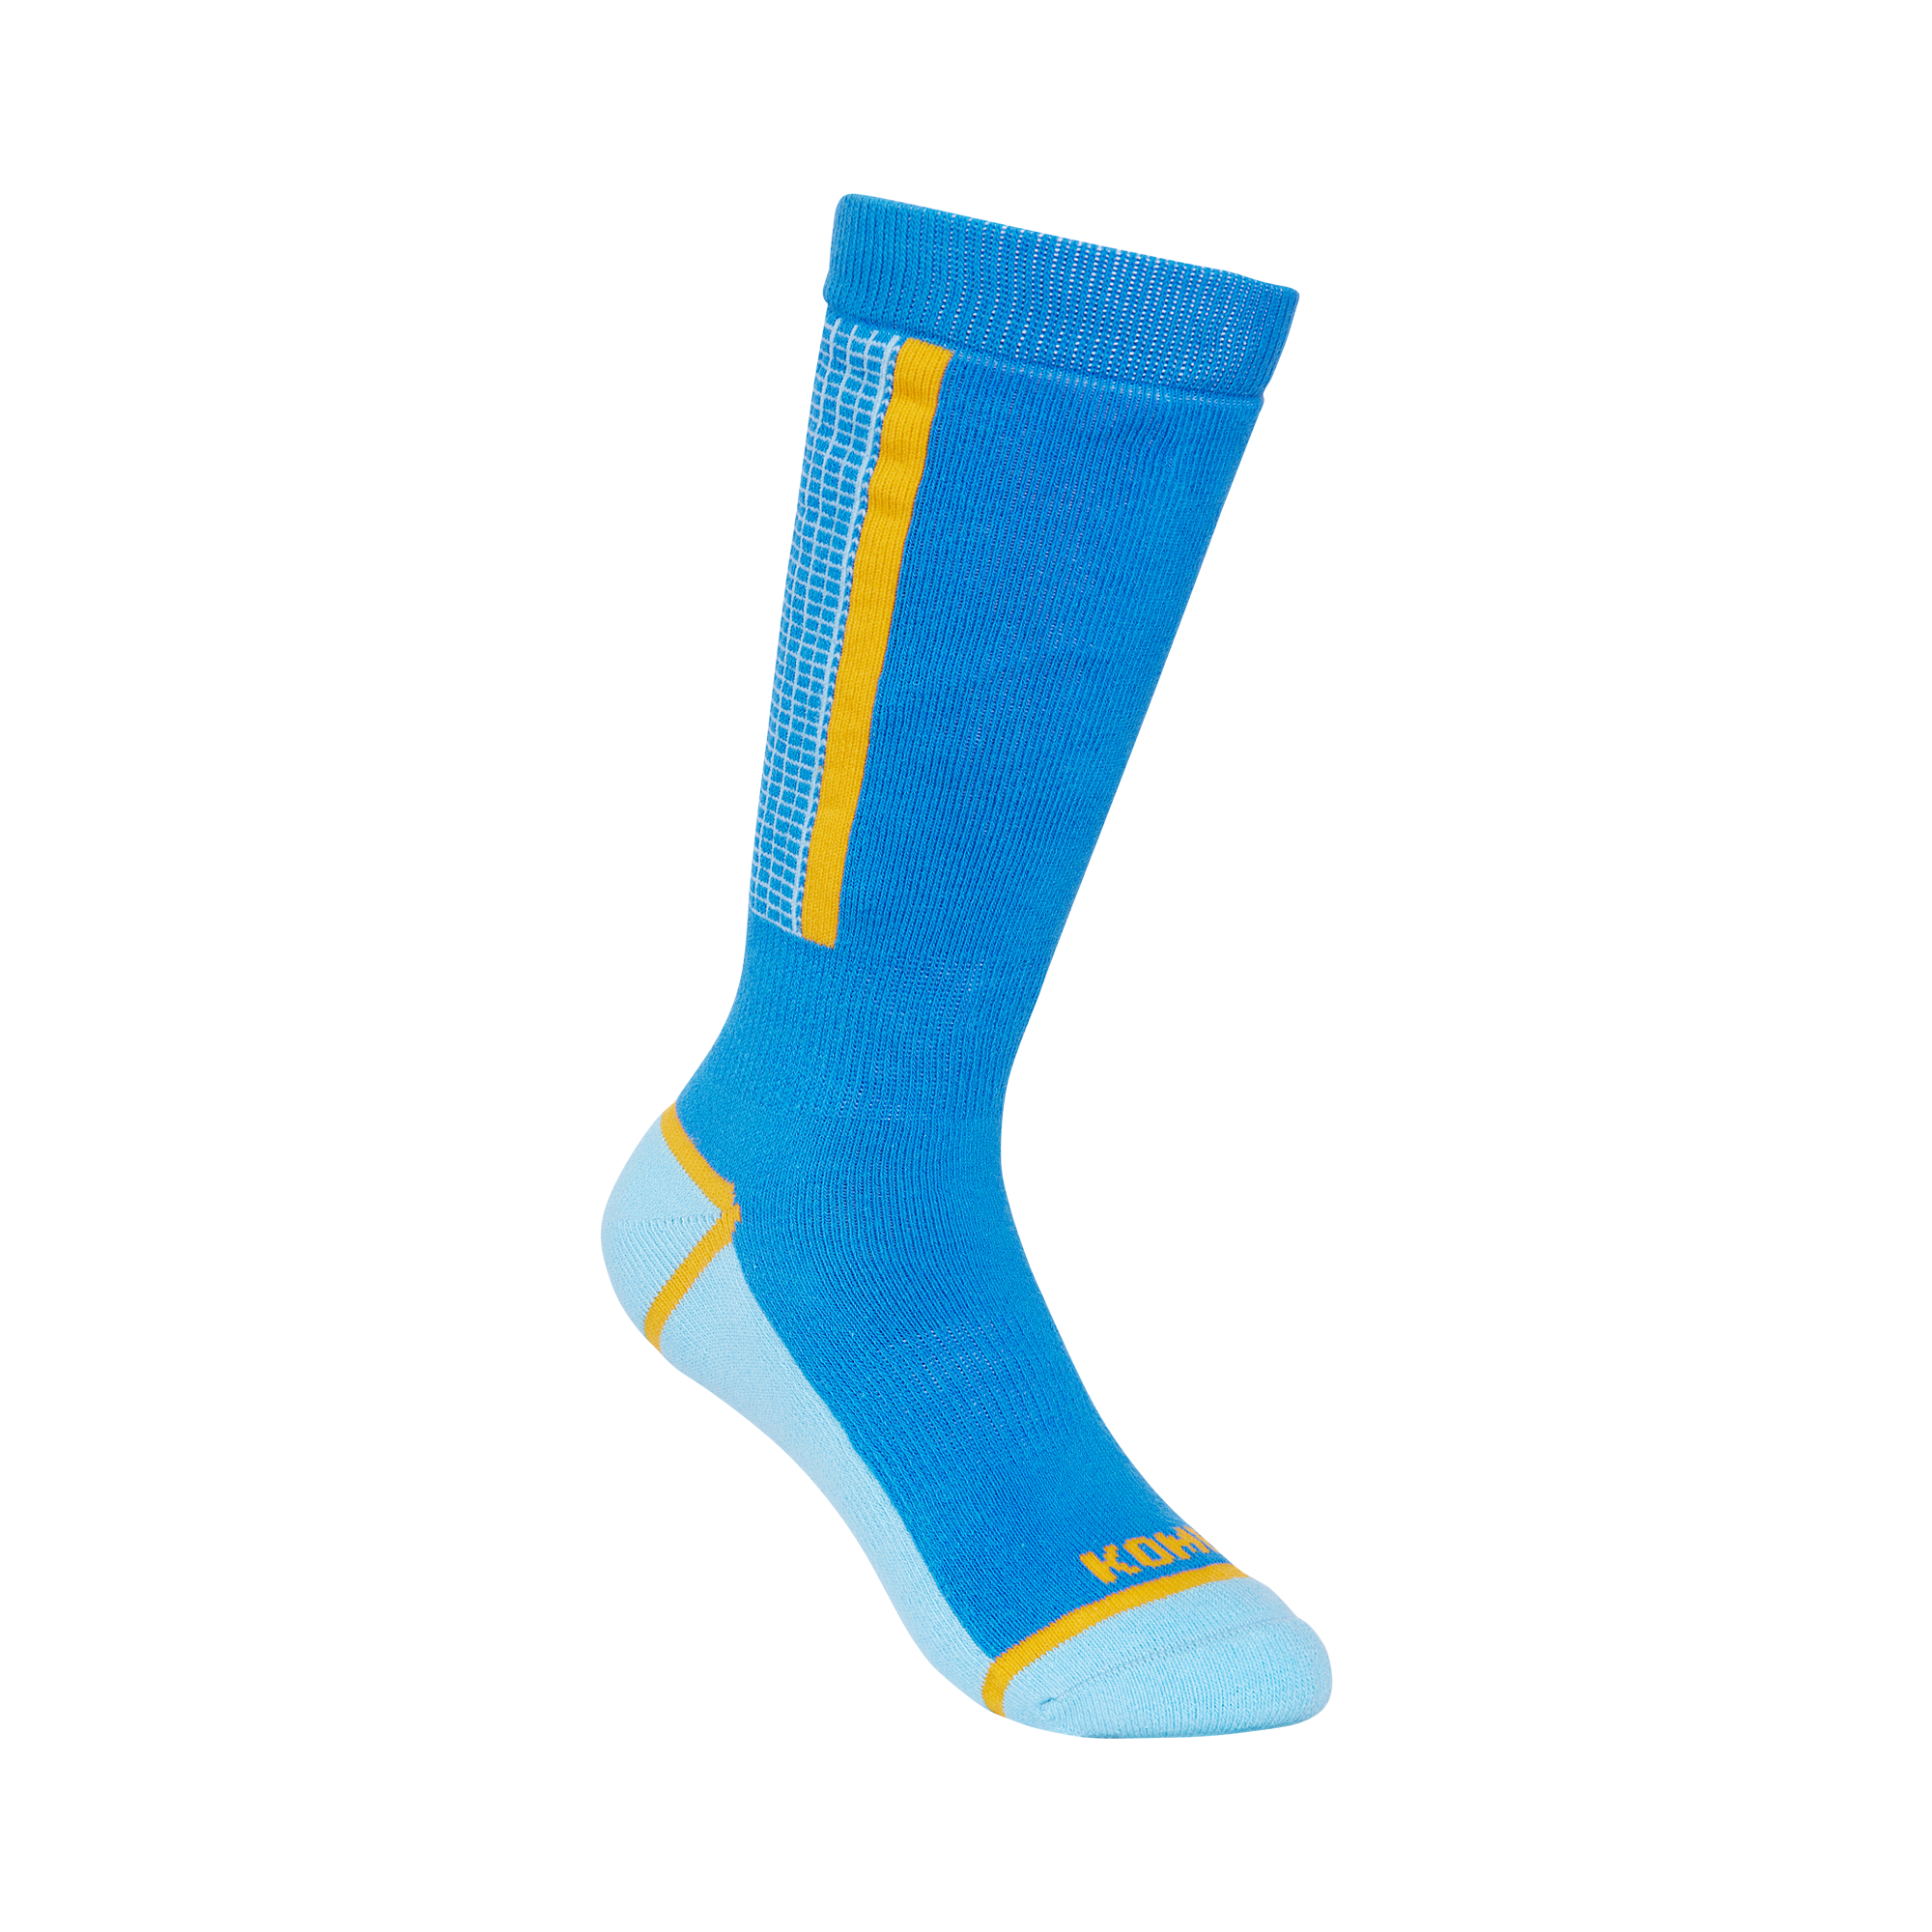 Kombi - Paragon Children's Thick Ski Socks